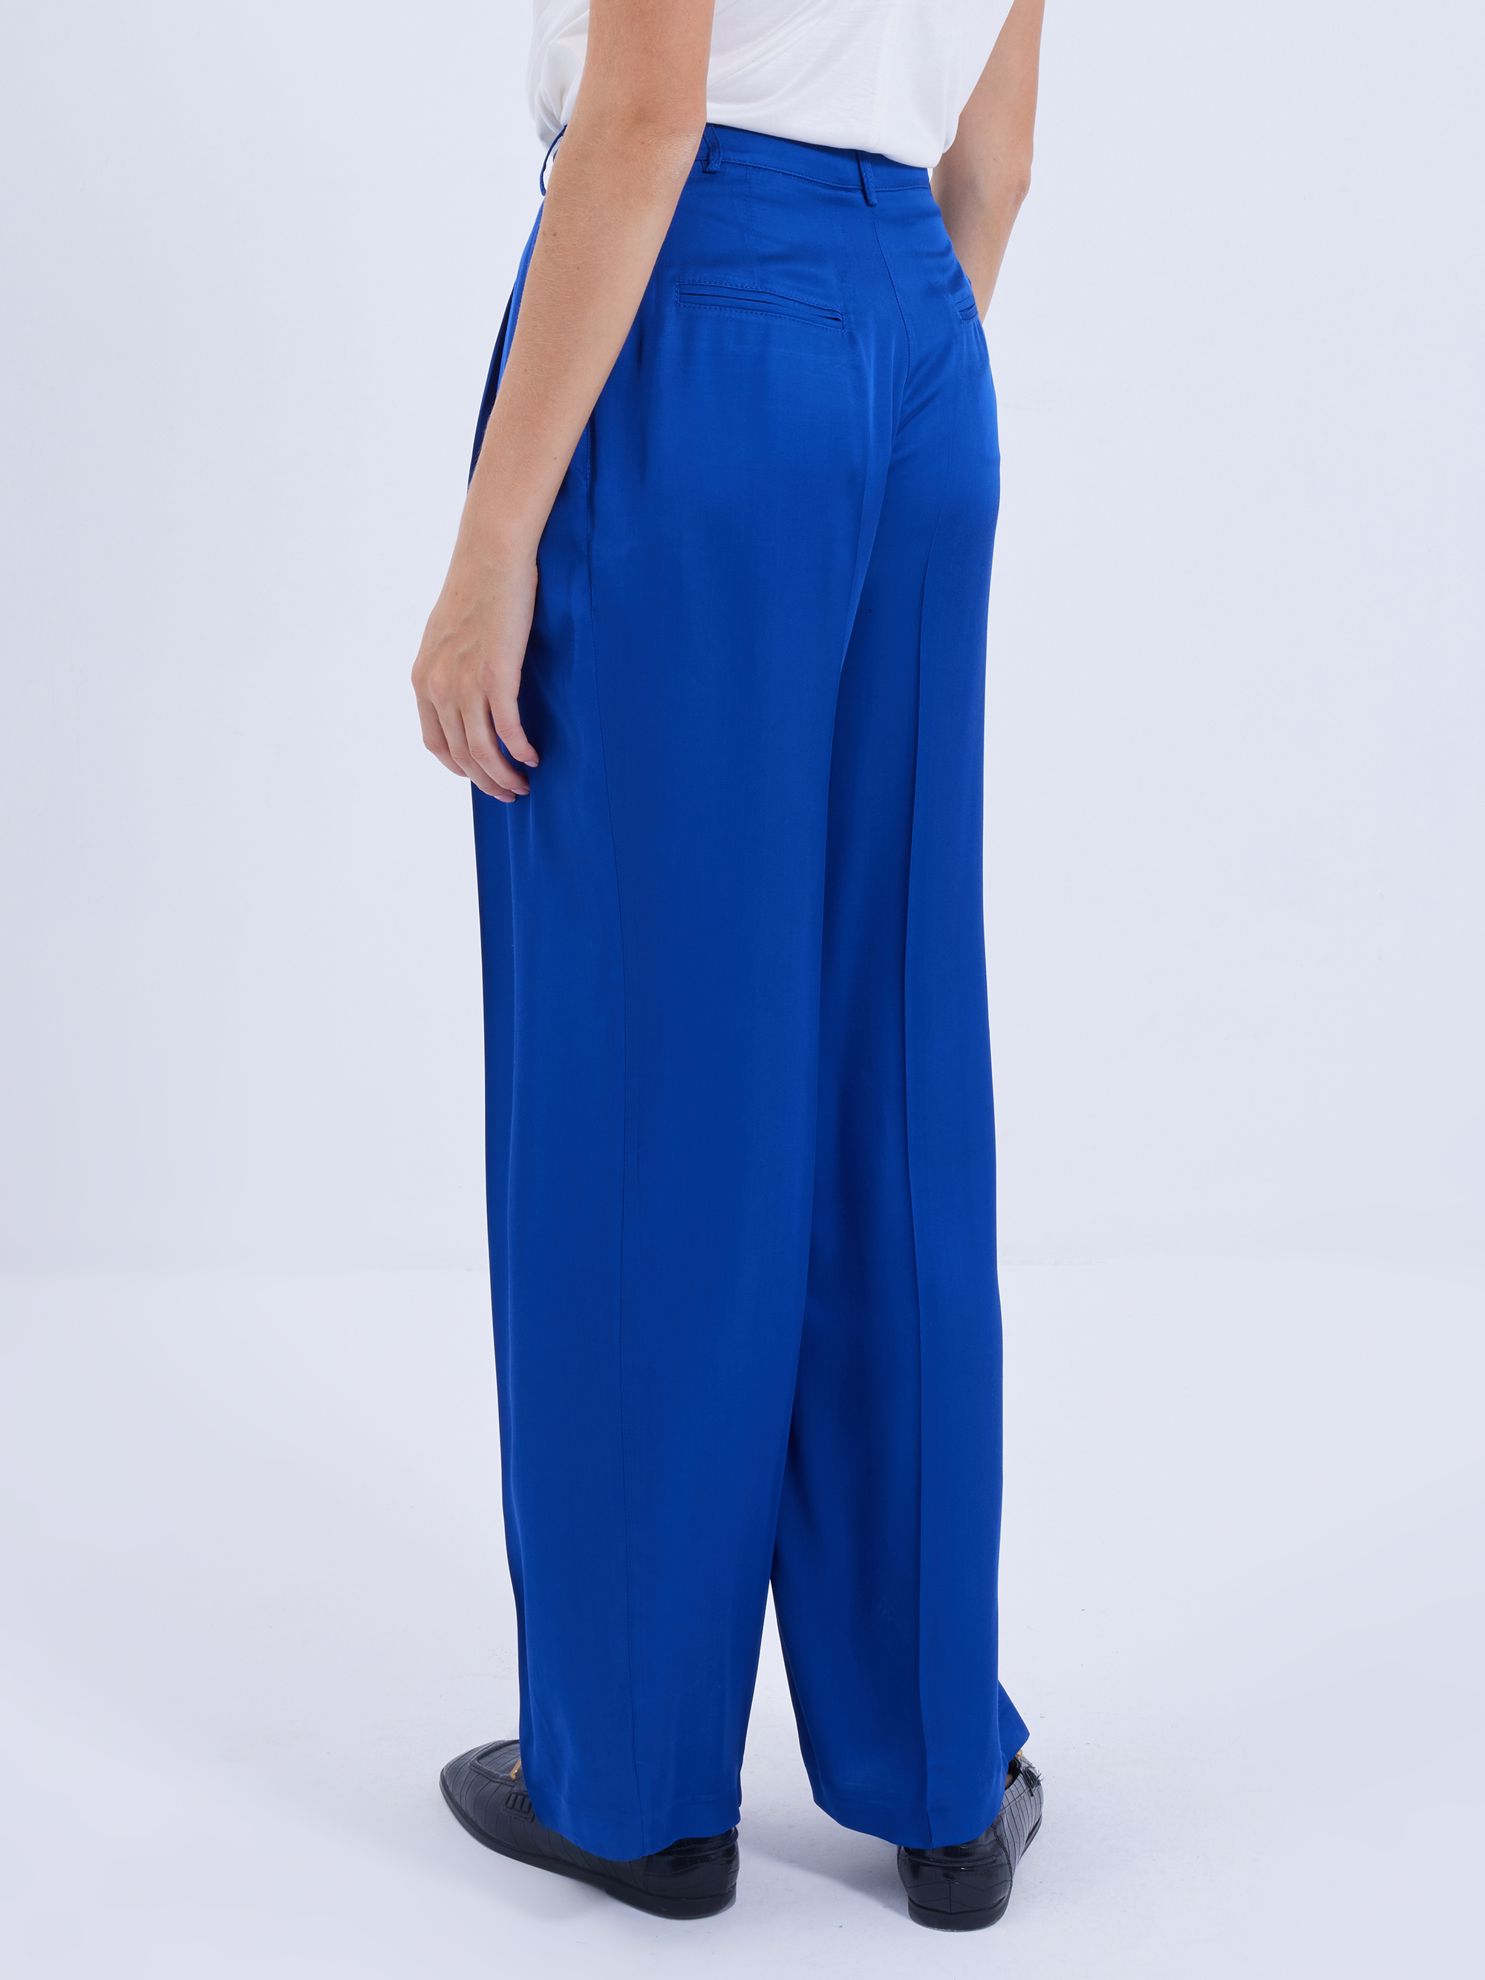 Karaca Kadın Pantolon-Saks Mavi. ürün görseli